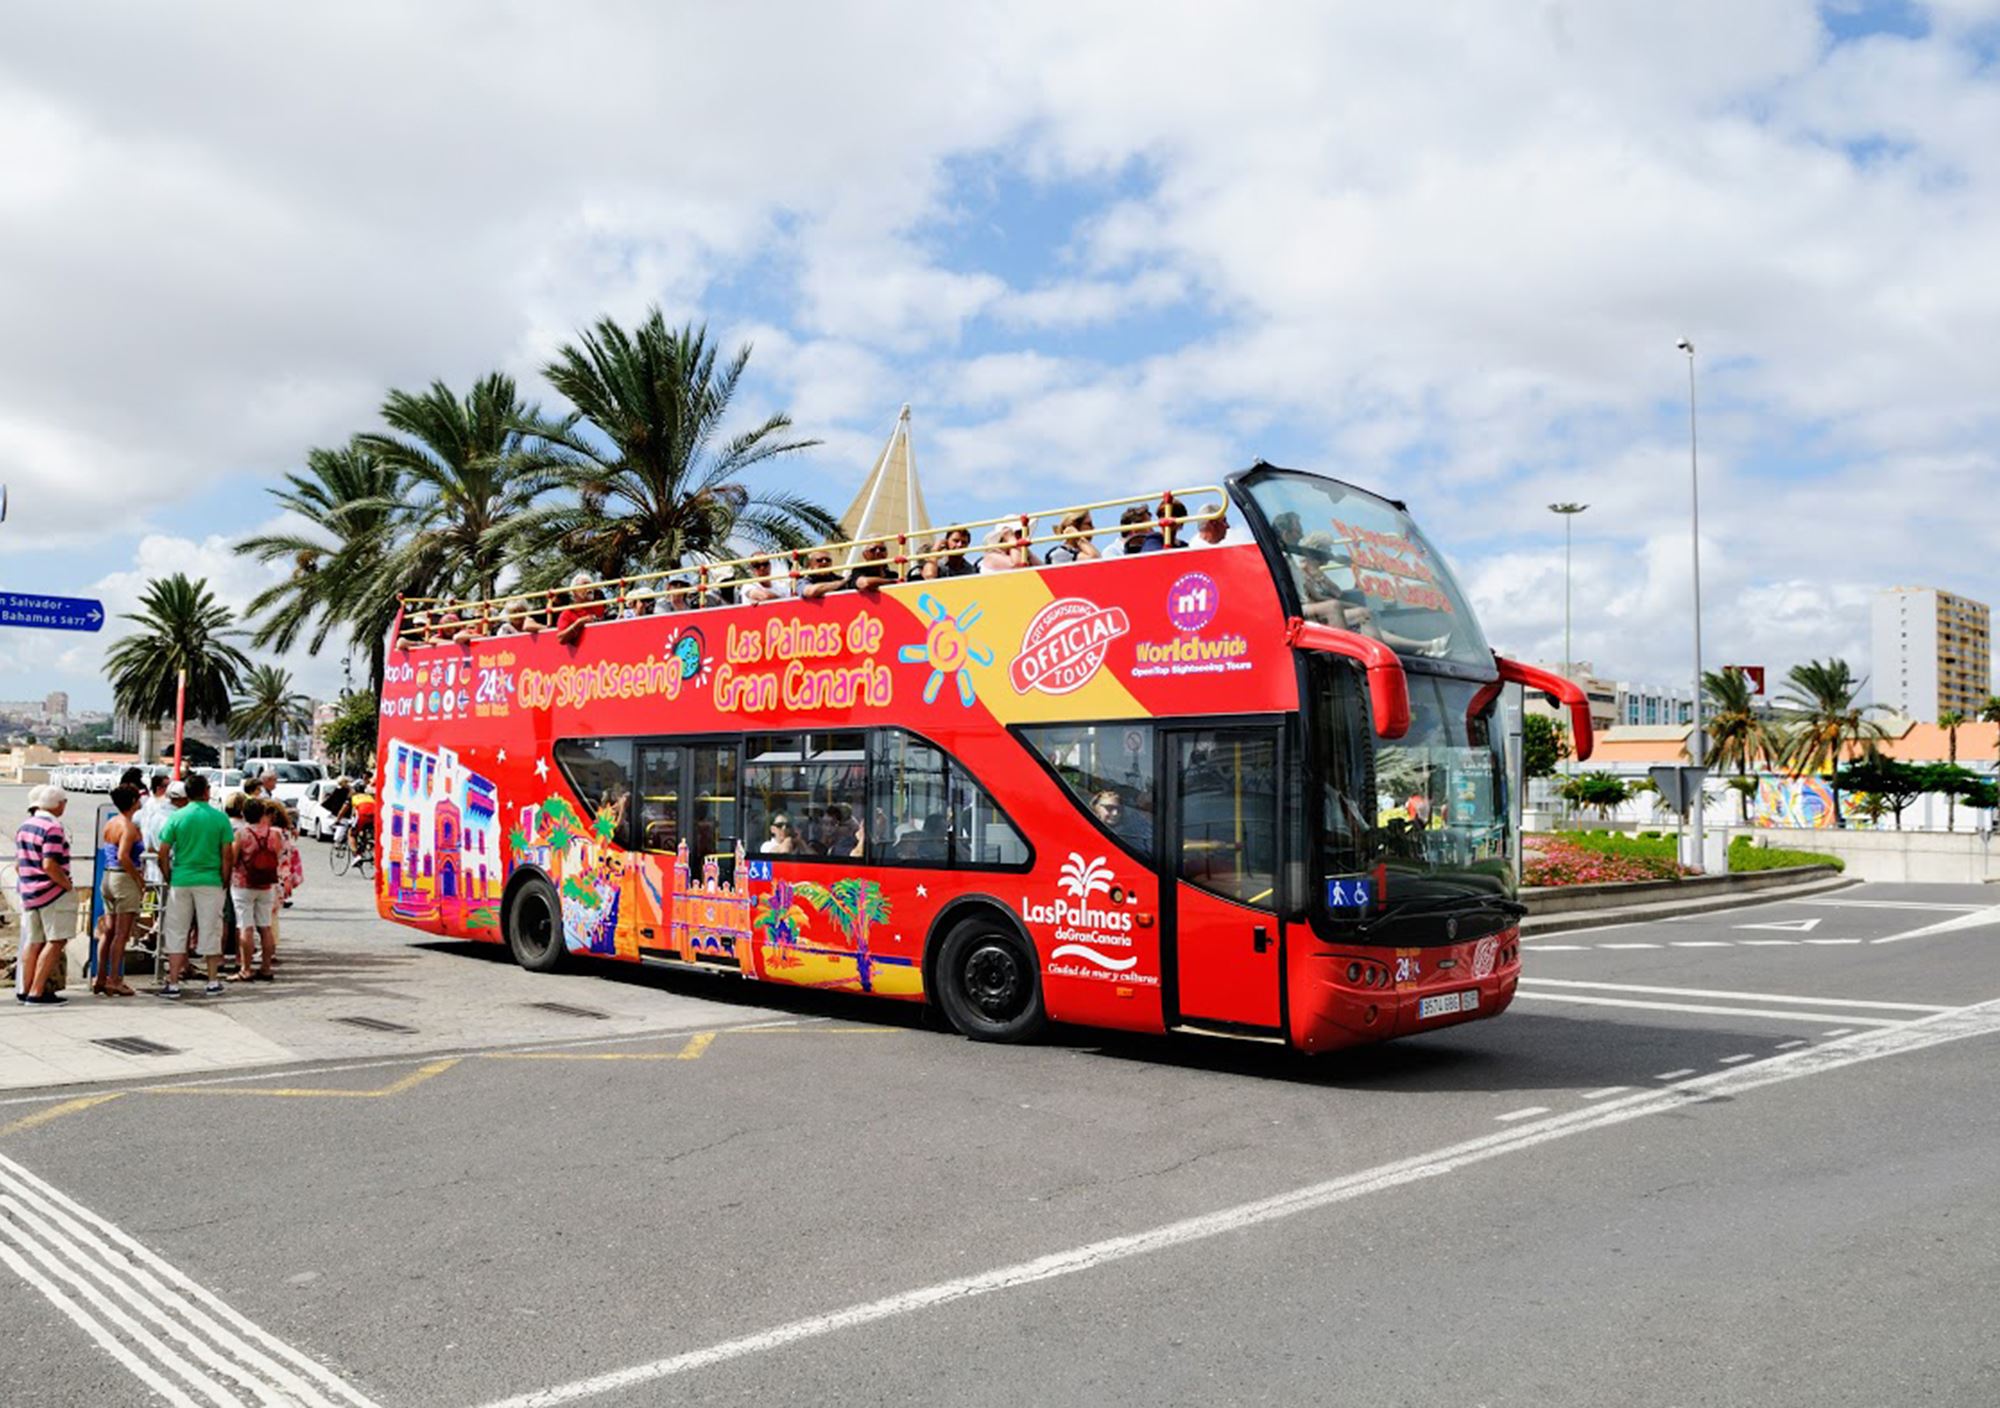 reservieren kaufen buchung tickets besucht Touren Fahrkarte karte karten Eintrittskarten Touristikbus City Sightseeing Las Palmas de Gran Canaria